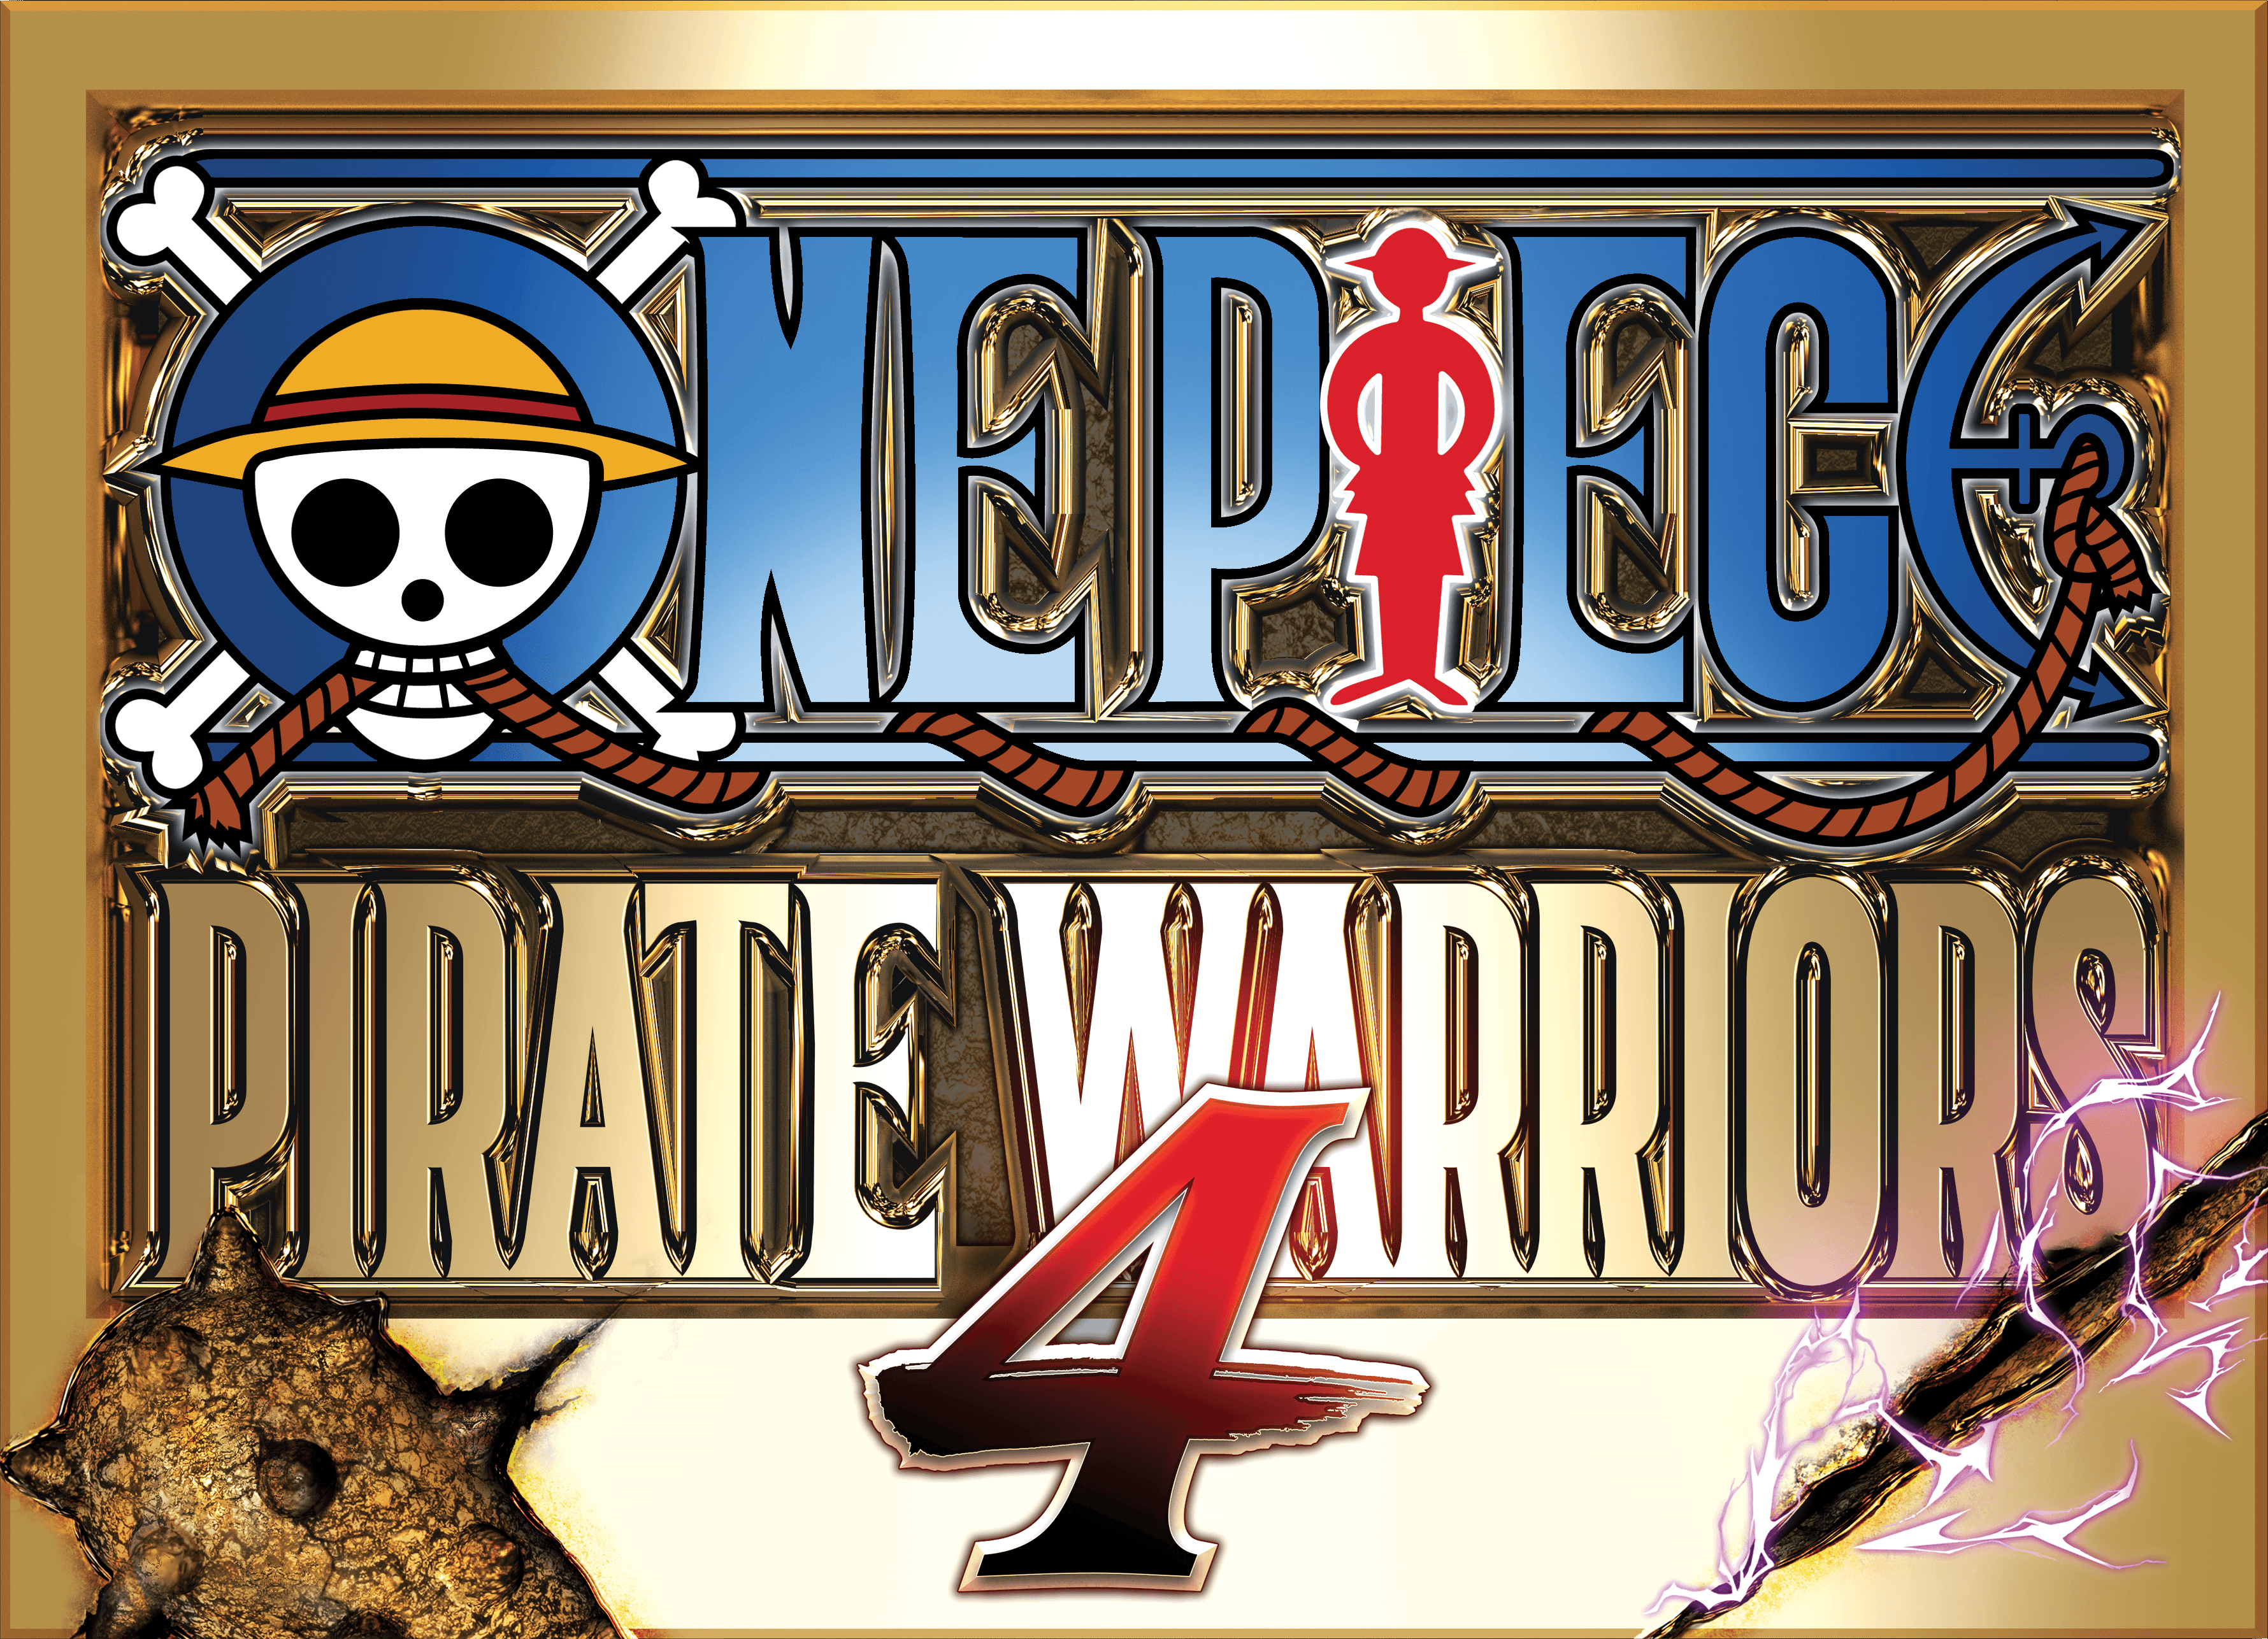 One Piece: Pirate Warriors 4, One Piece Wiki